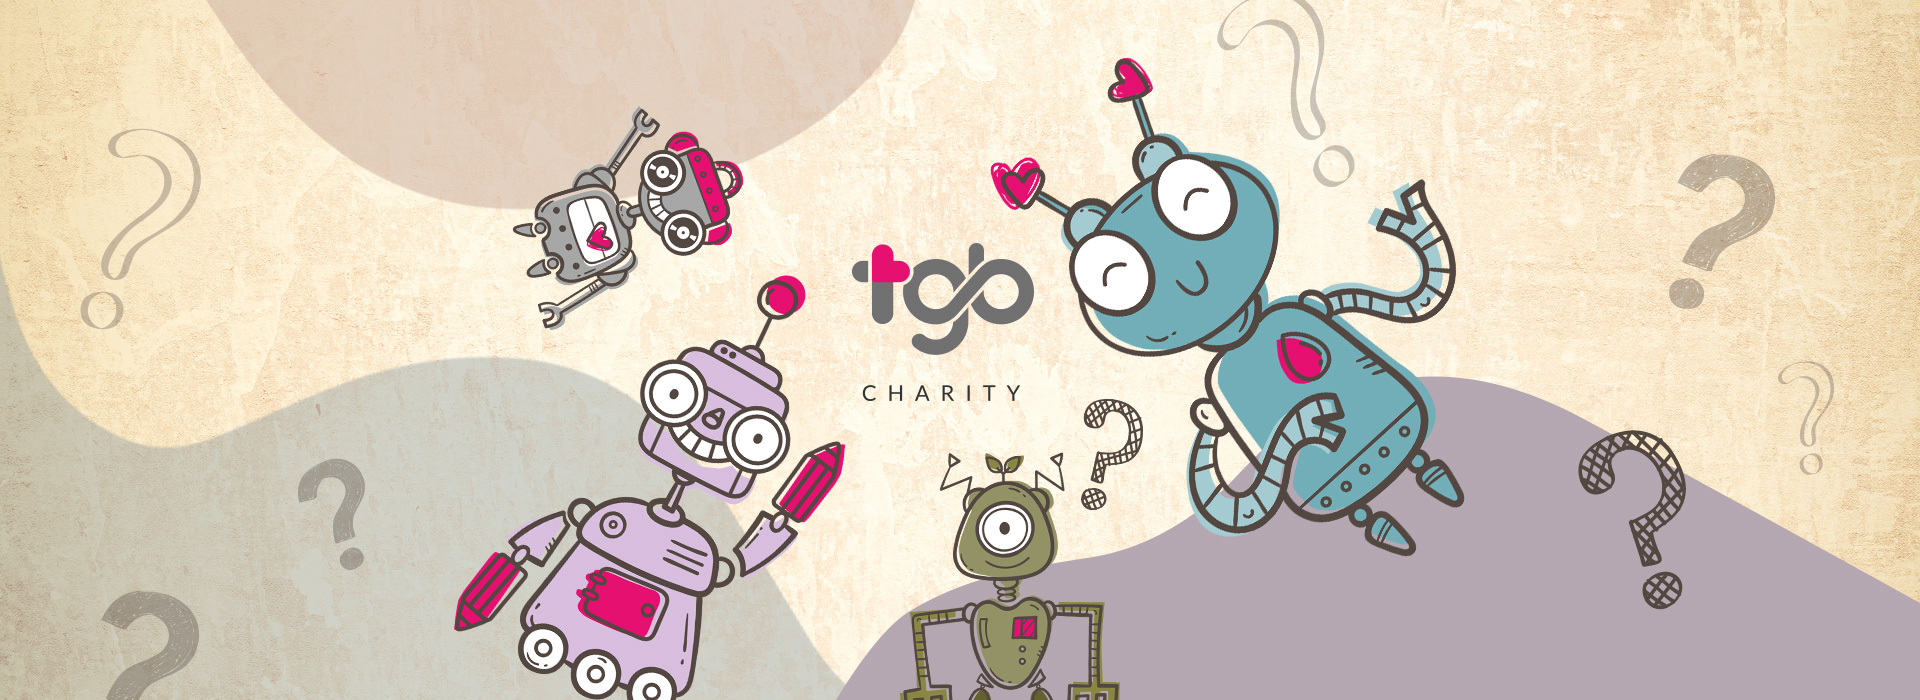 TGB Charity-这个有趣的心理测验将揭露你内心深处善良的颜色，同时你也有机会为世界尽一份心力，快来玩玩看吧！AI, 人工智能机器人